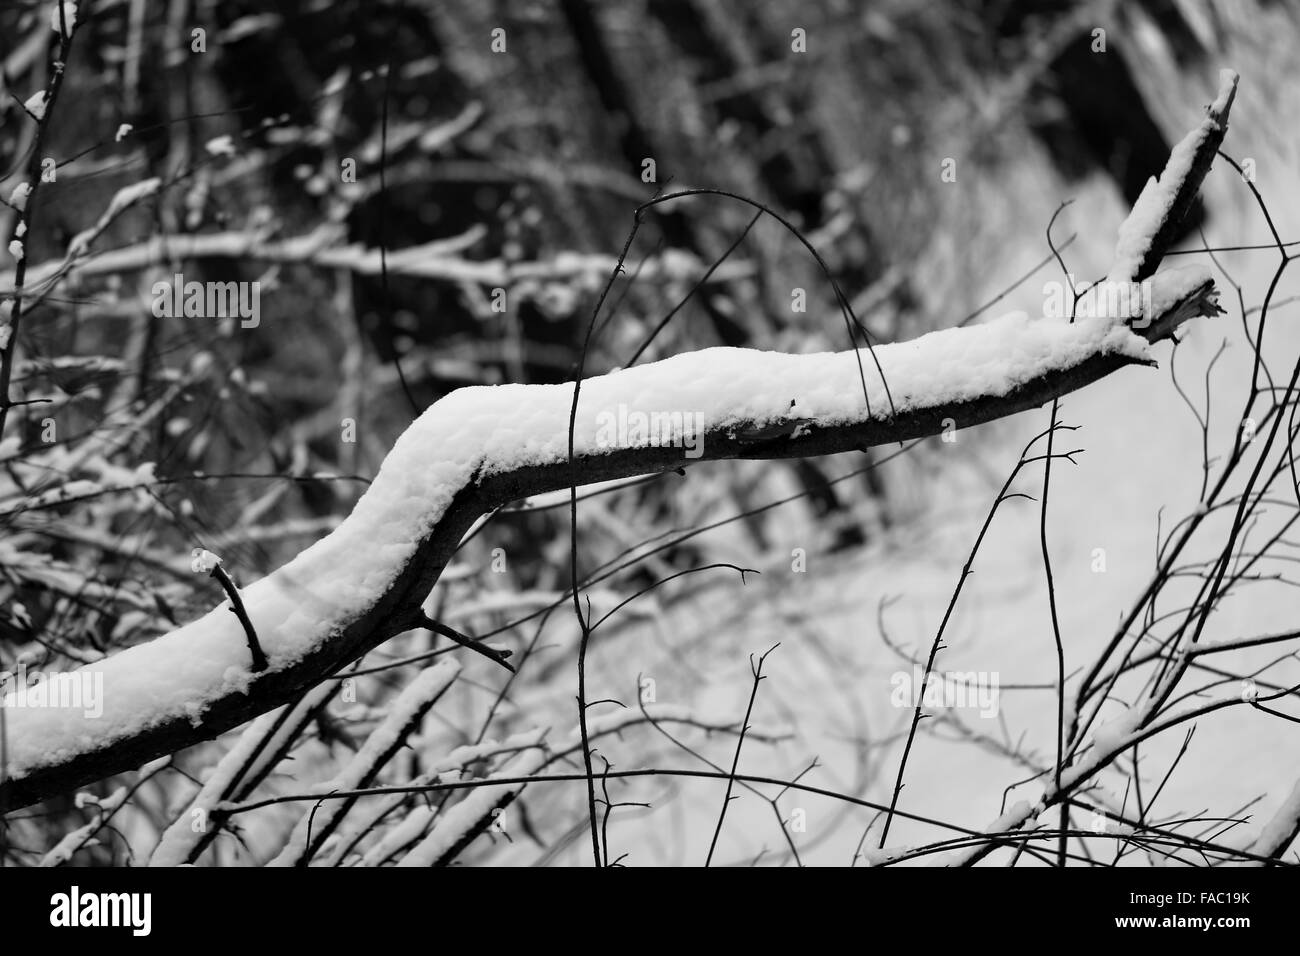 Bella la fotografia in bianco e nero degli alberi nella neve Foto Stock